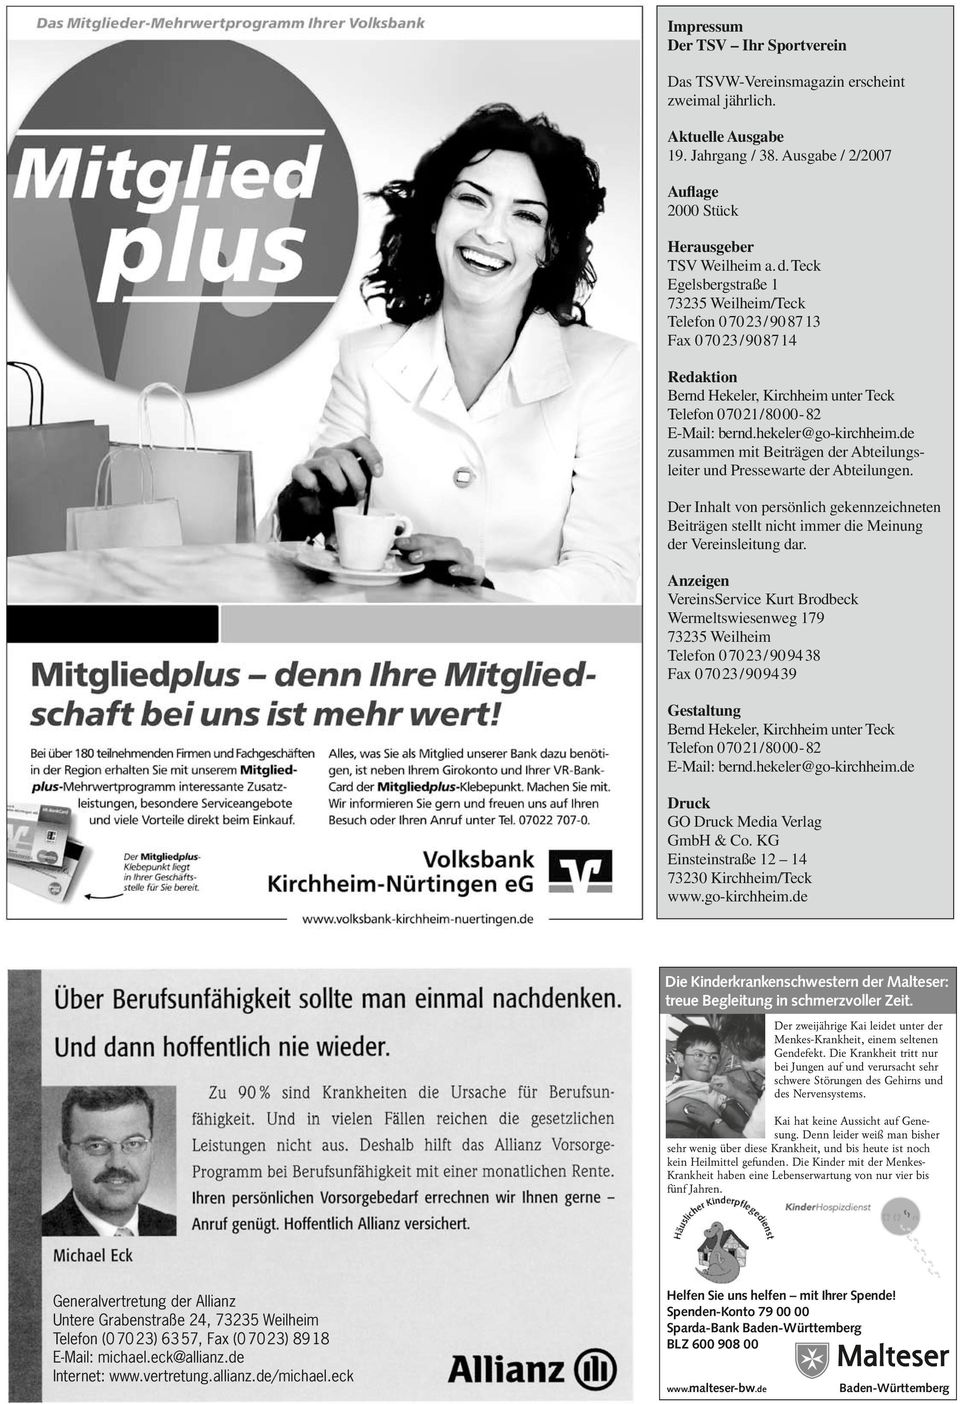 hekeler@go-kirchheim.de zusammen mit Beiträgen der Abteilungsleiter und Pressewarte der Abteilungen.